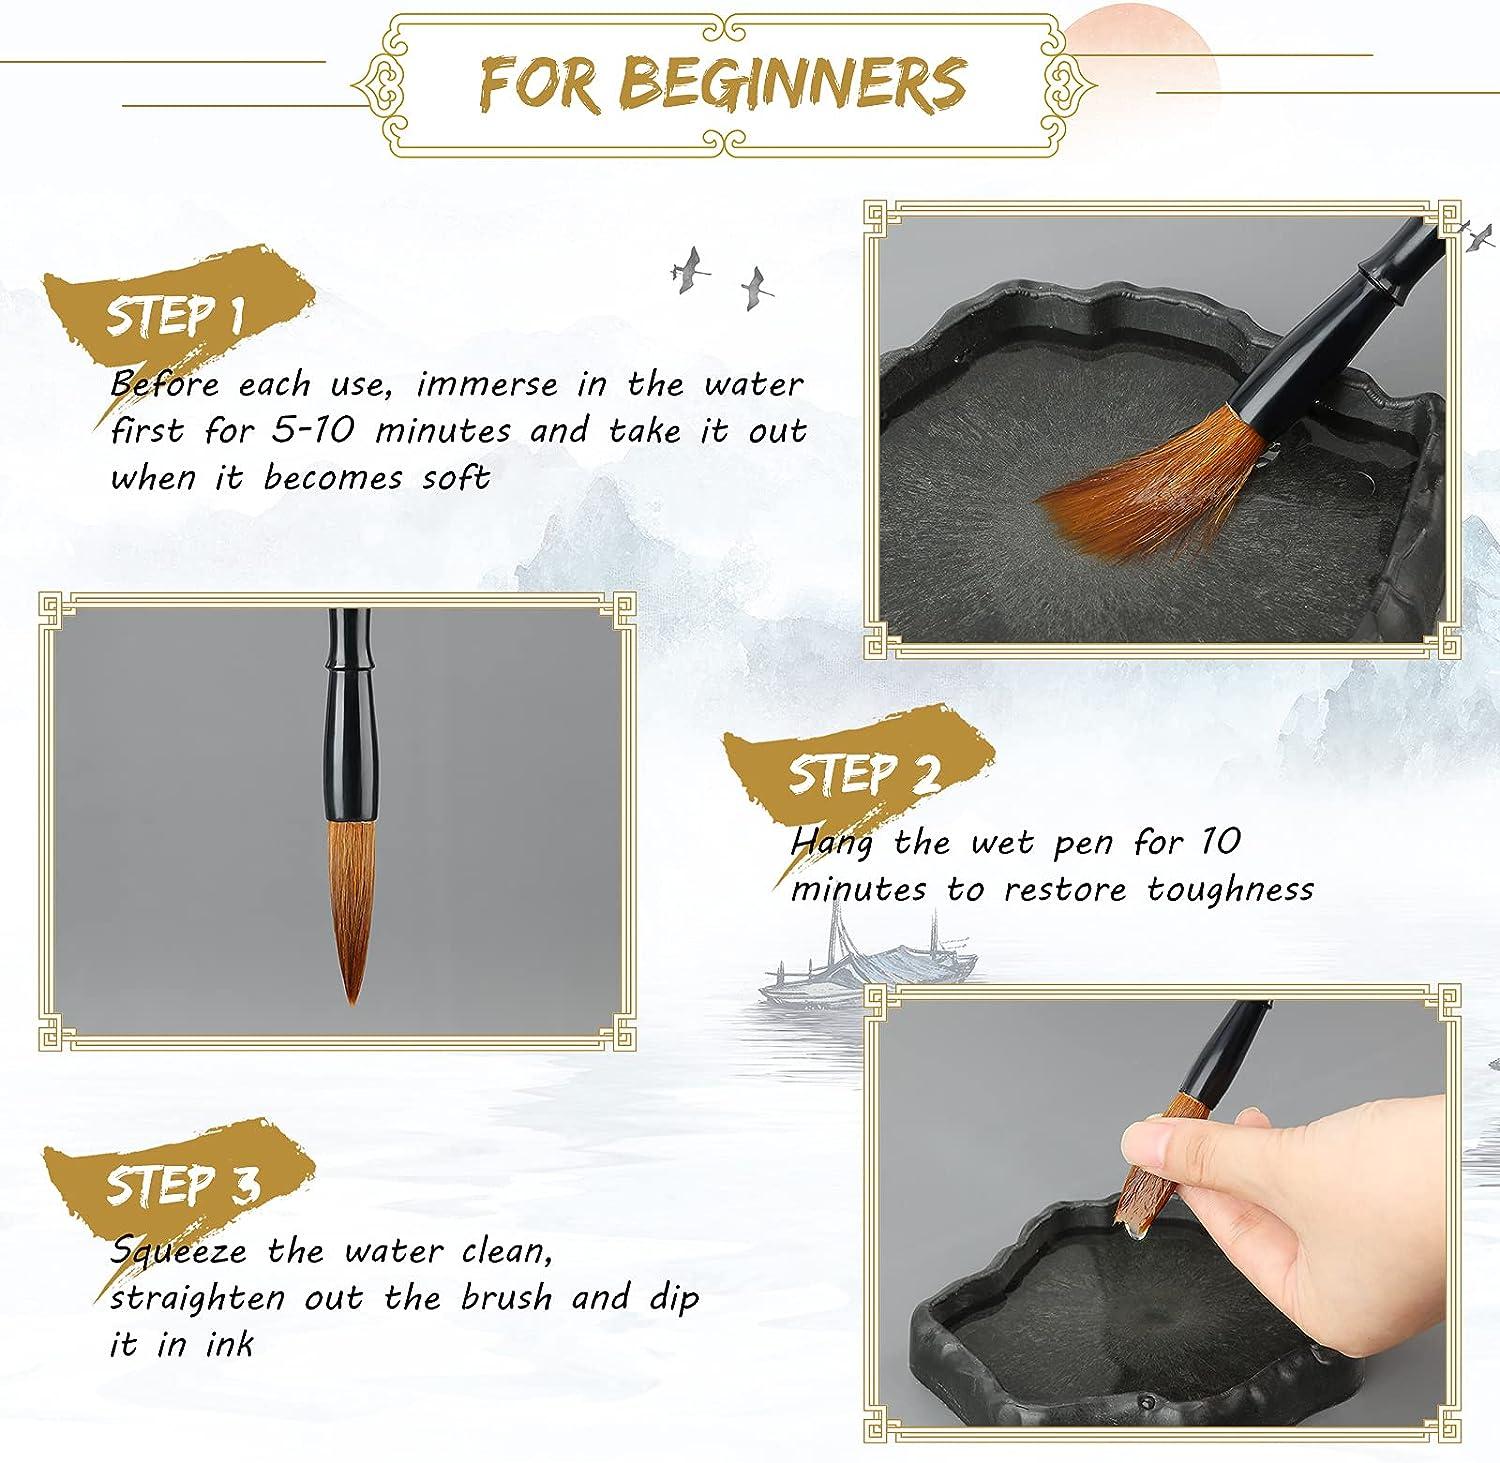 Chinese CALLIGRAPHY Set 5 Brush Japanese Sumi-e Ink - Never Used